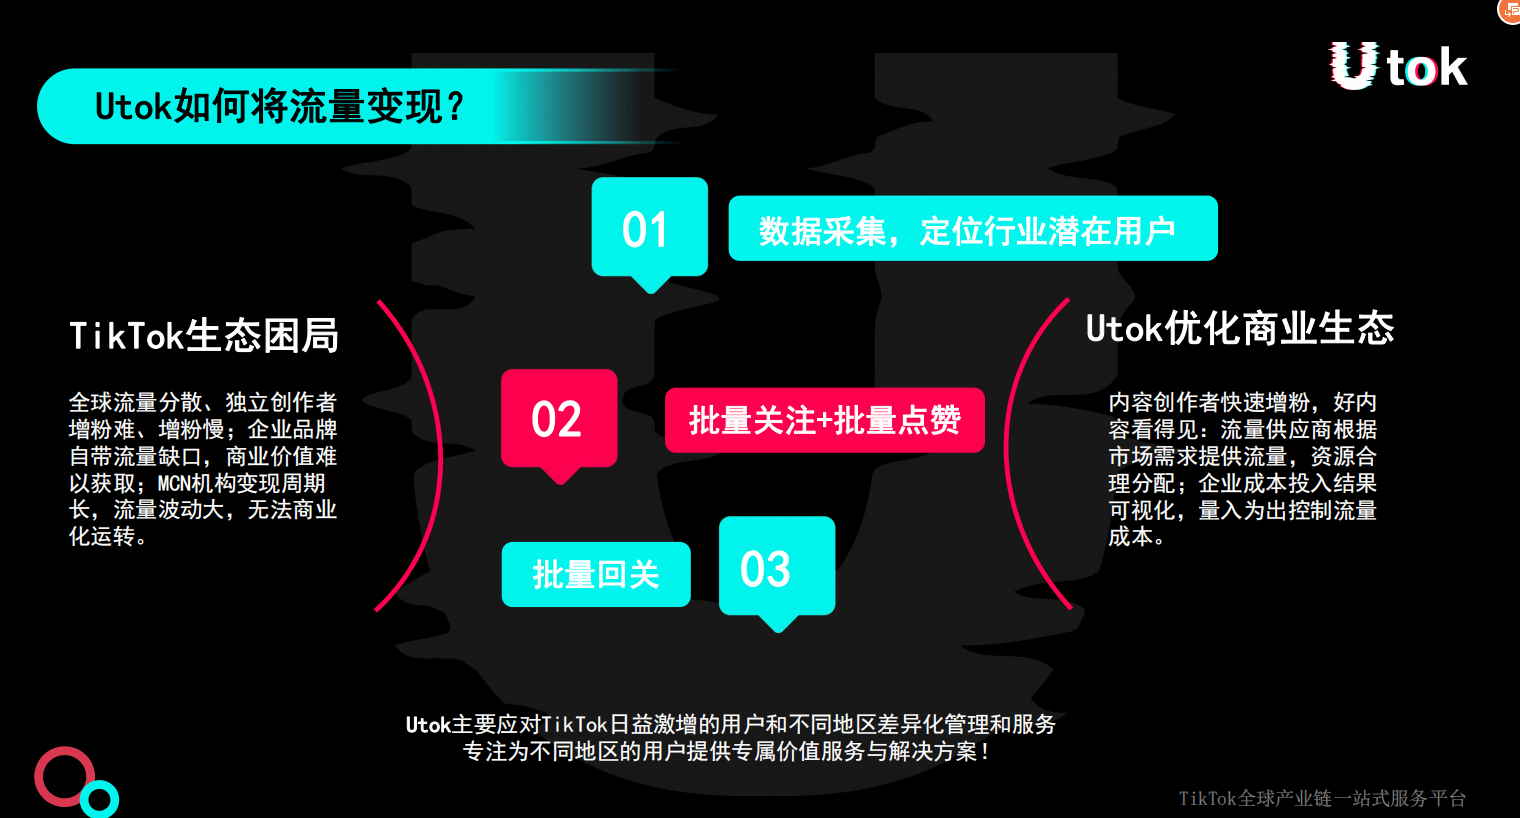 Utok传统托管业务转型模式g际项目，日化1%六月上线速进-第5张图片-首码圈